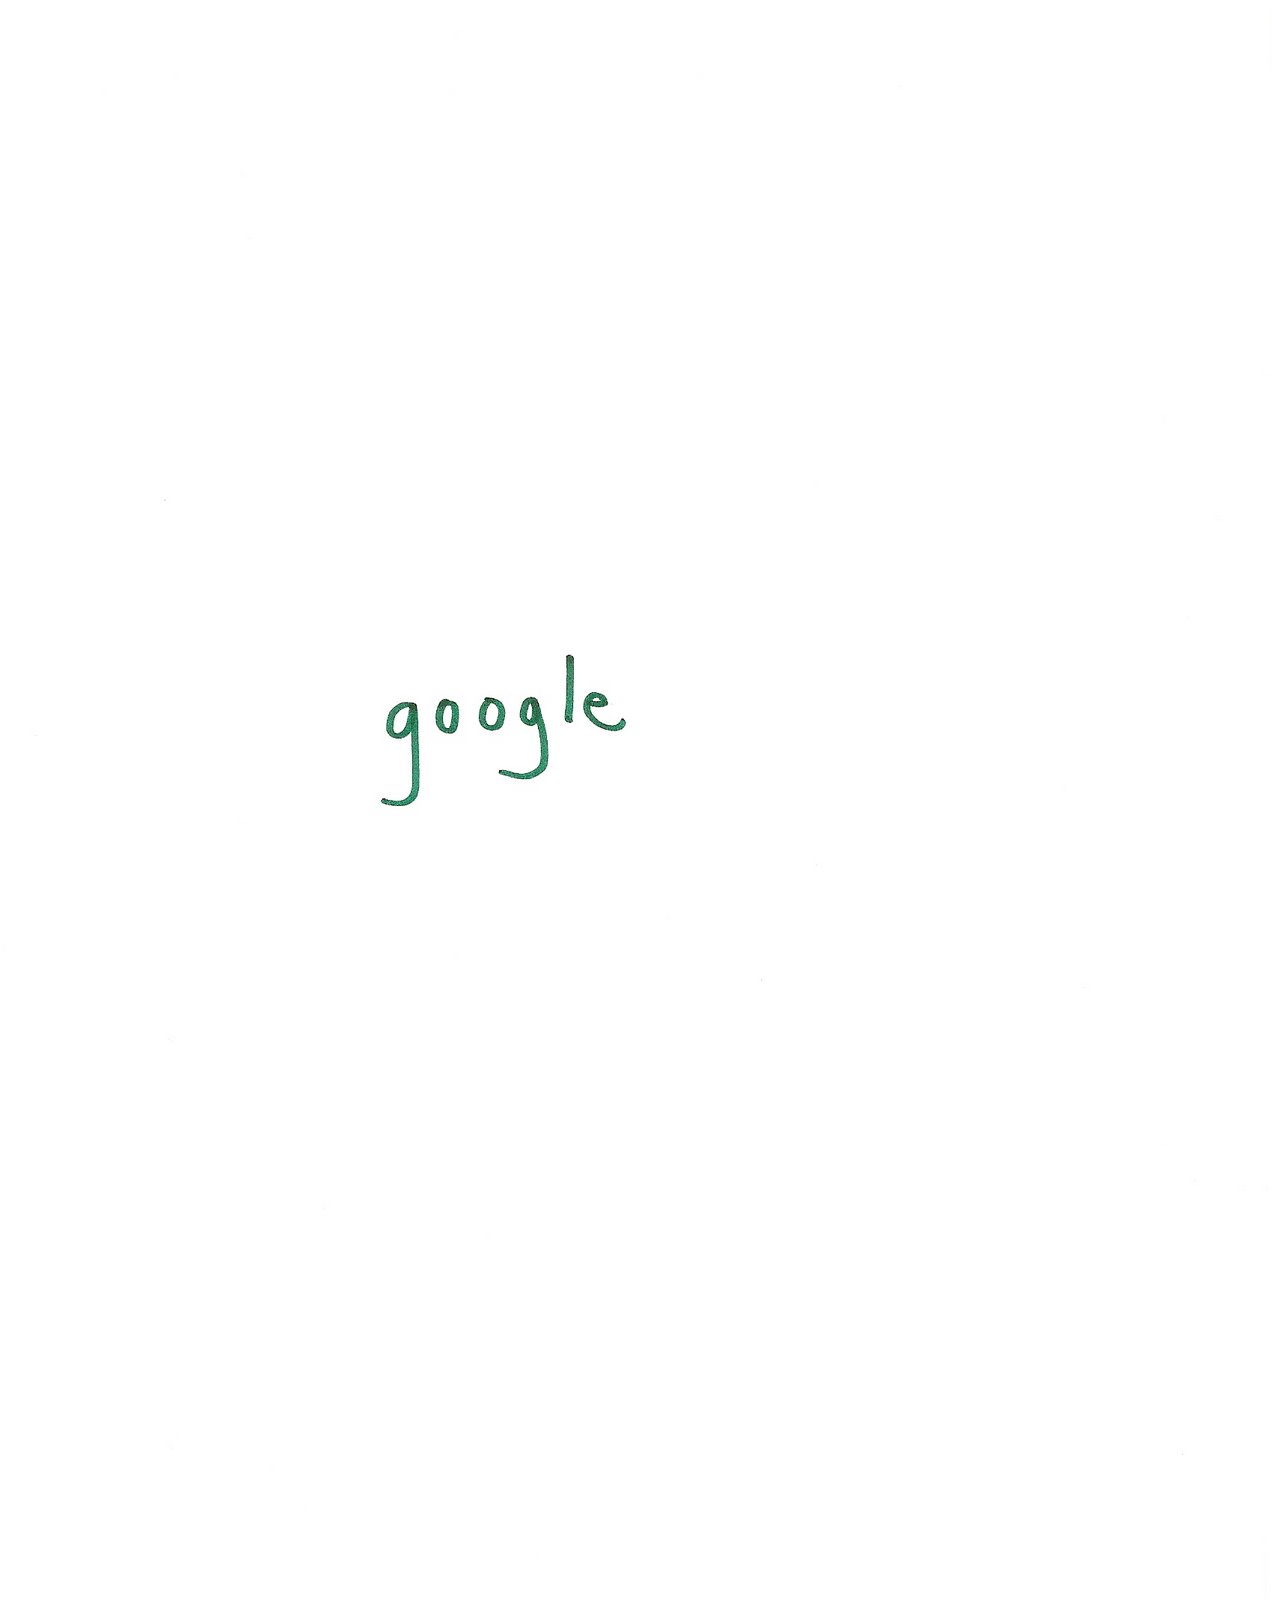 [google.jpg]